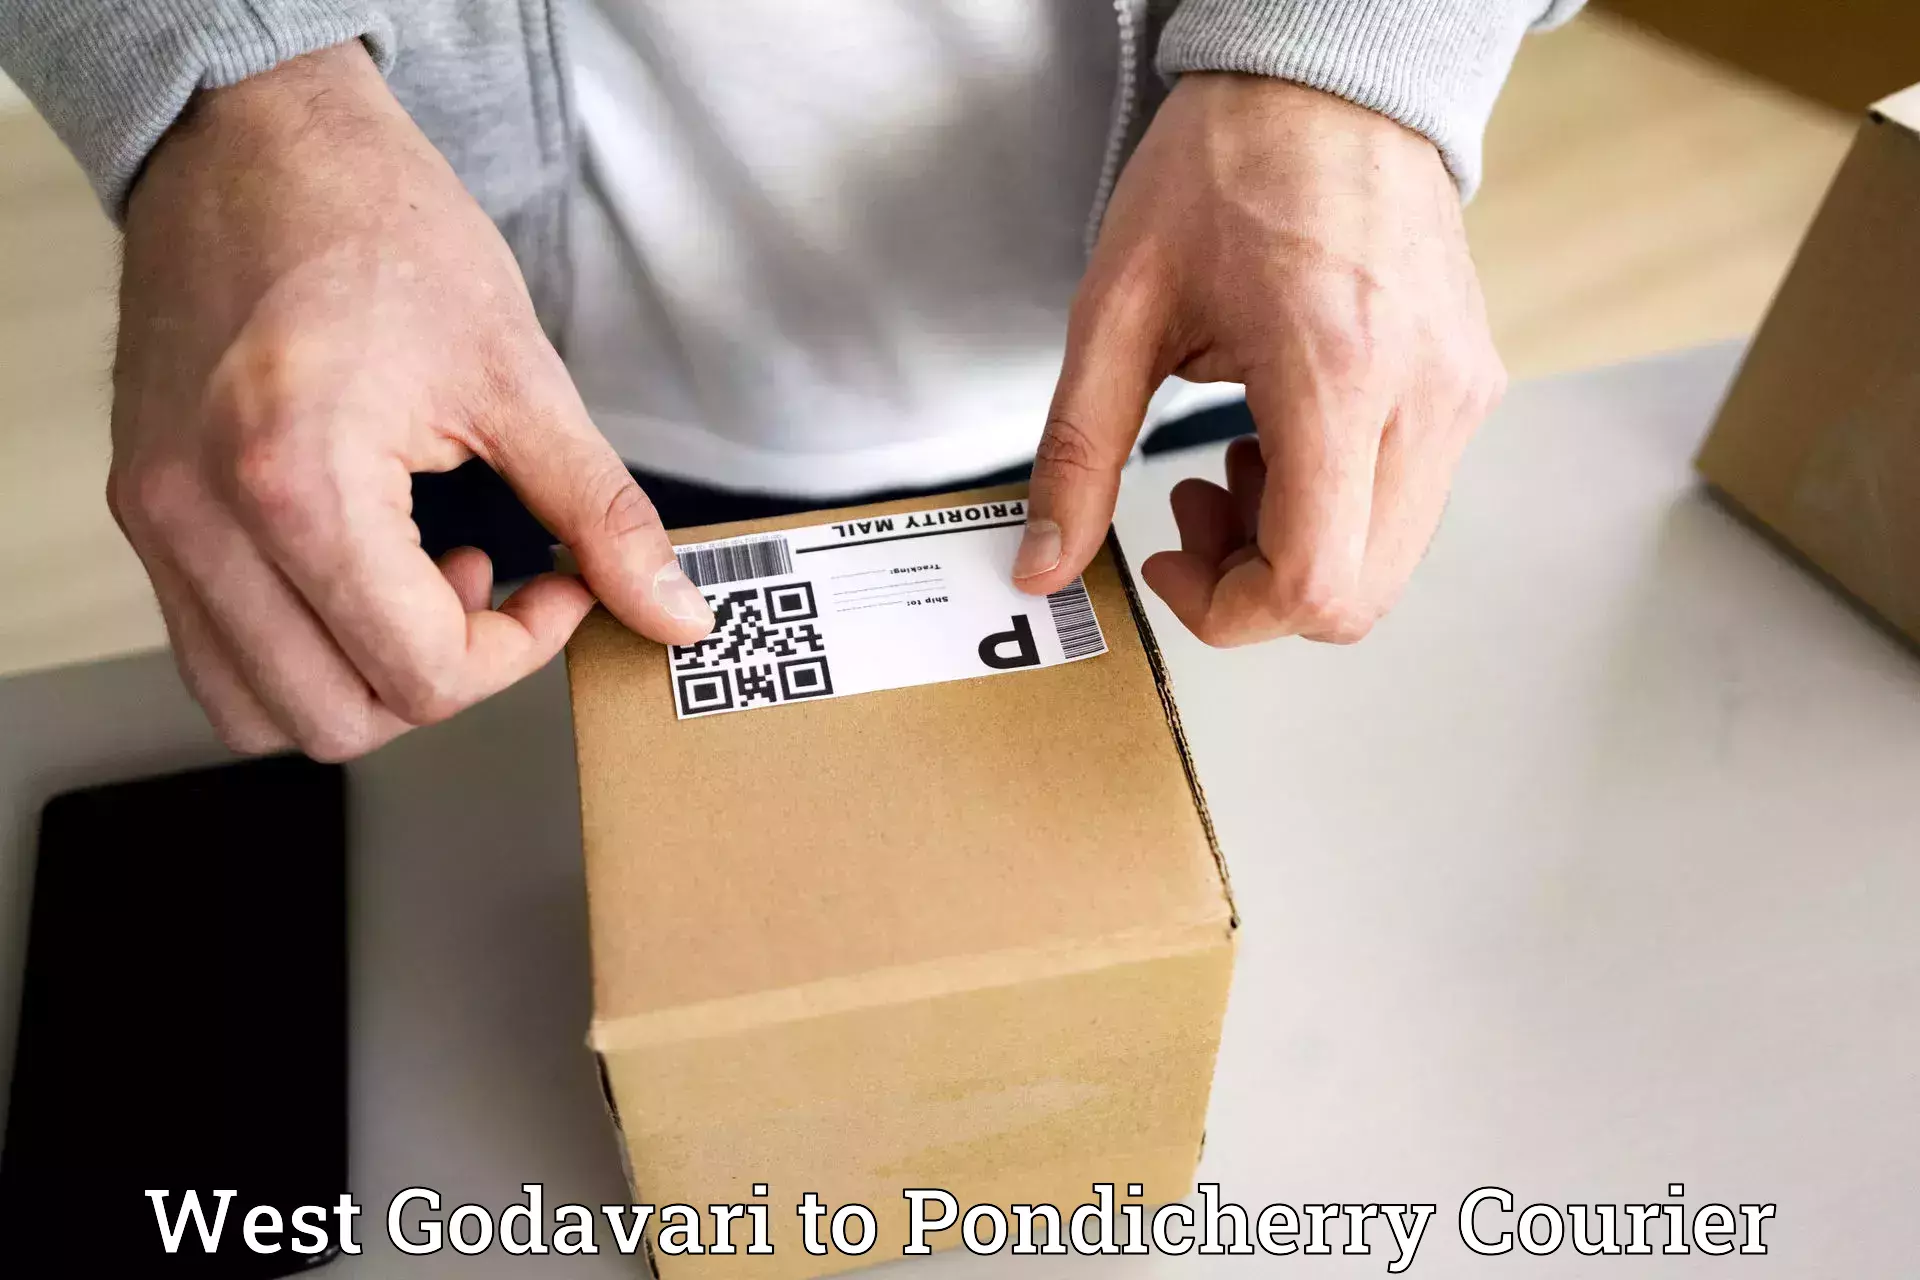 Same-day delivery solutions West Godavari to Pondicherry University